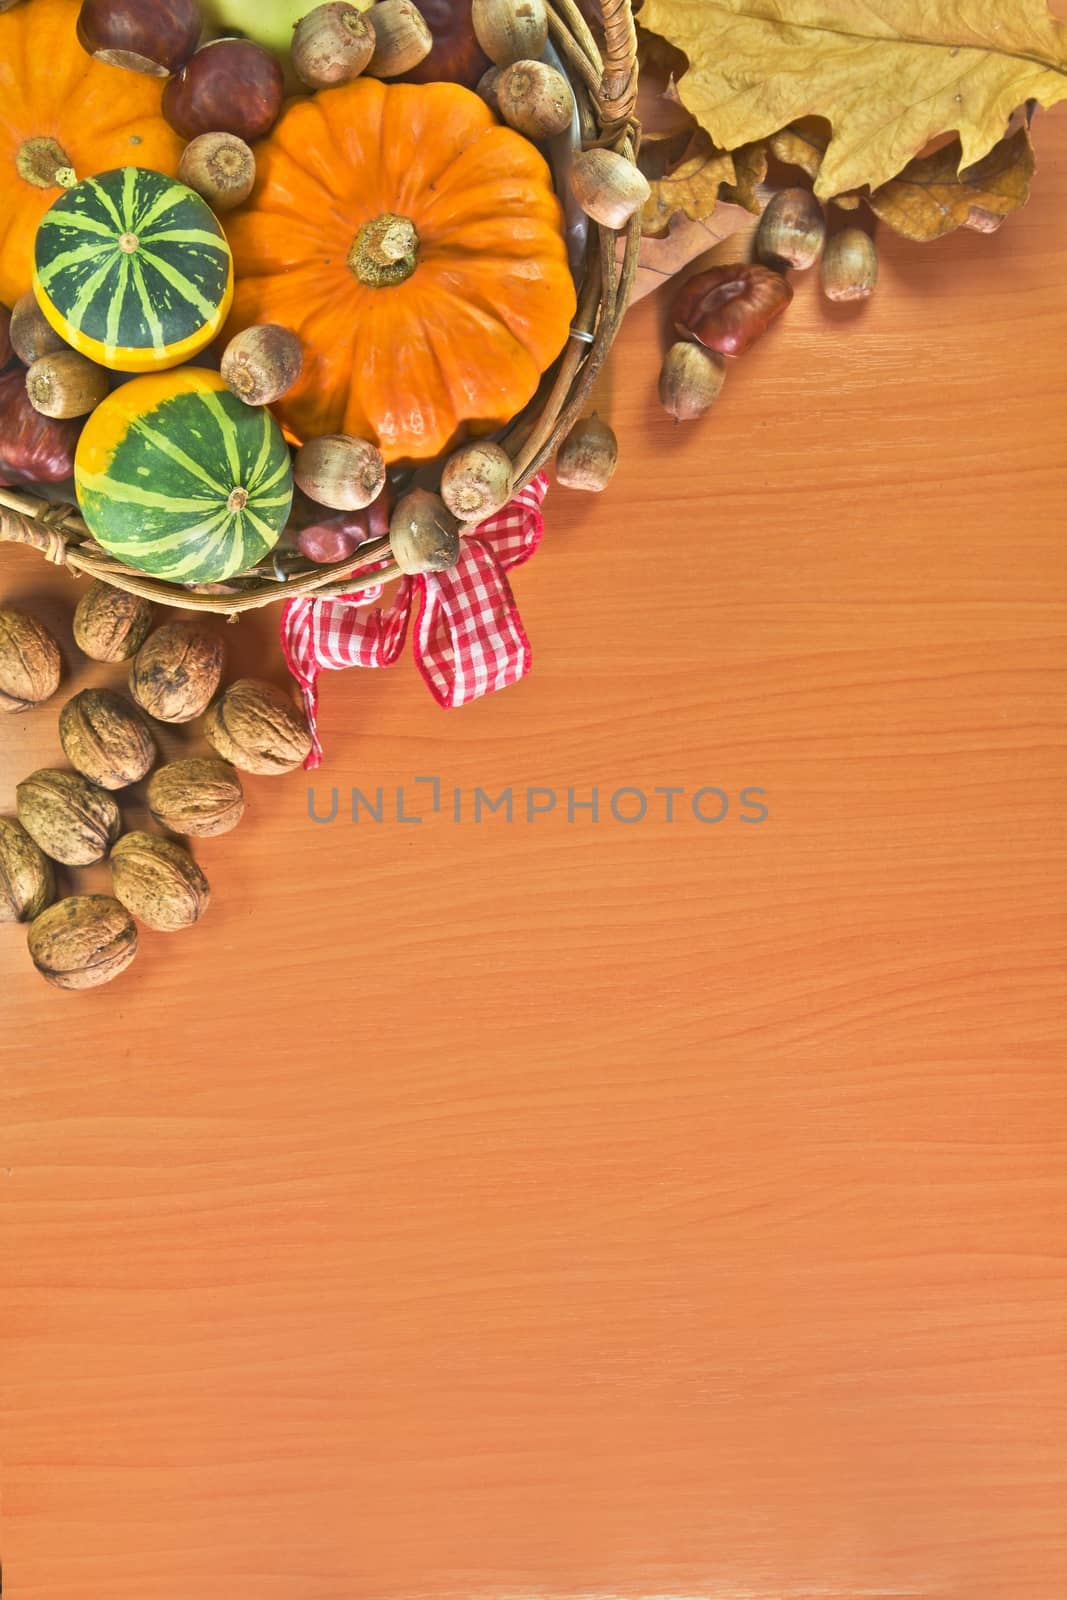 Autumn vegetable background by Dermot68